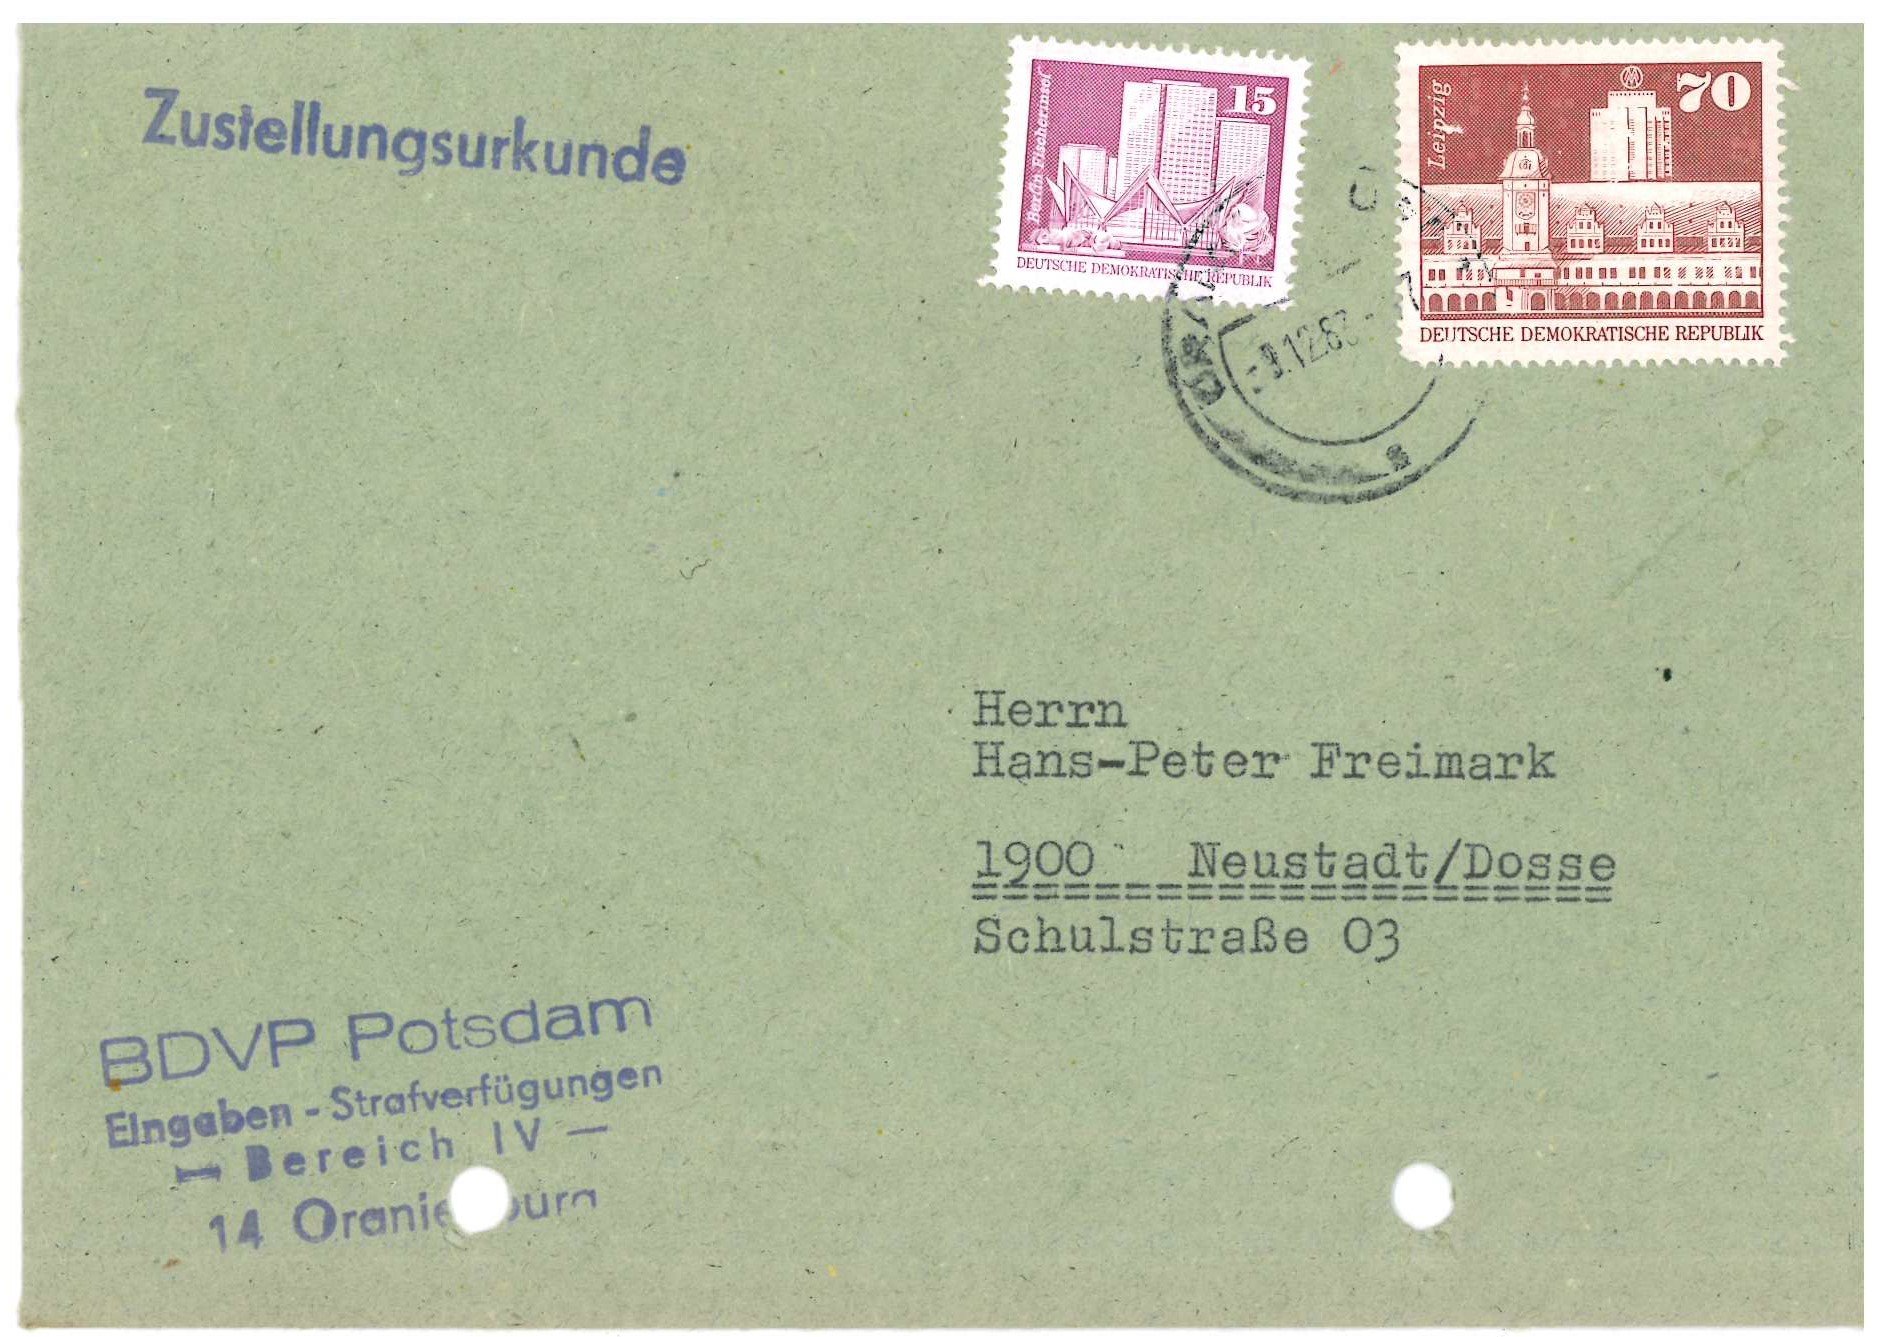 Briefumschlag mit Stempel "Zustellungsurkunde" der Bezirksbehörde der Volkspolizei Potsdam an Hans-Peter Freimark (DDR Geschichtsmuseum im Dokumentationszentrum Perleberg CC BY-SA)